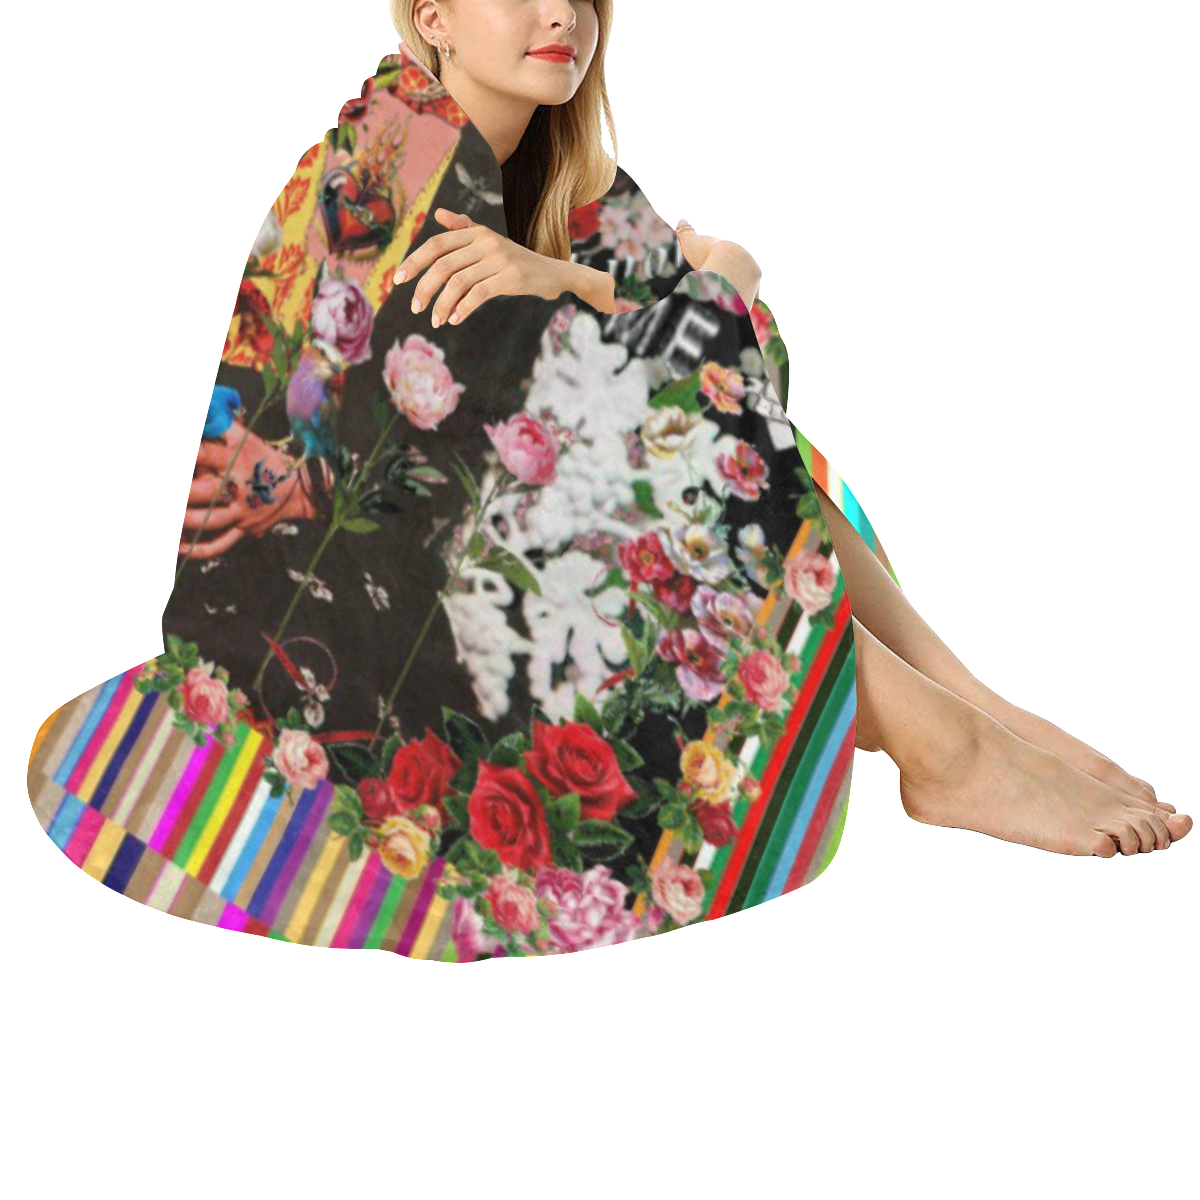 Frida Incognito Circular Ultra-Soft Micro Fleece Blanket 60"